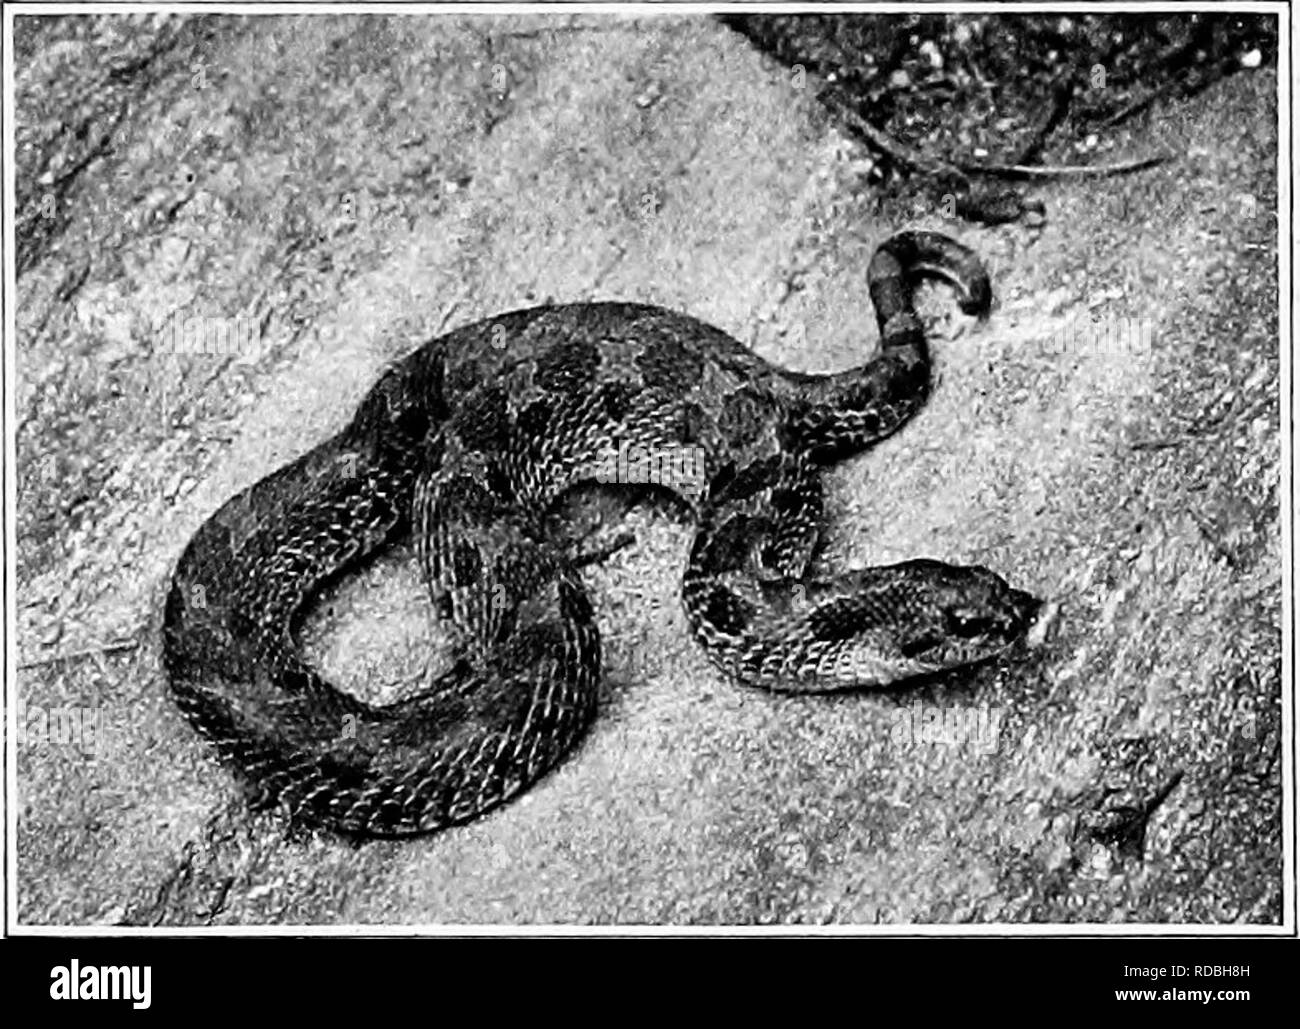 . L'American natural history ; une base de connaissances utiles de les animaux supérieurs de l'Amérique du Nord. L'histoire naturelle. Couleuvre 93 Angleterre Etats-Unis jusqu'à New York, et également dans les états du sud-est et la vallée du Mississippi est trouvé une sous- espèce appelée Natrix sipedon fasciata. Hog-Nosed^ Le serpent est un serpent de nombreux noms et habitudes remarquable. Il est souvent appelé le "souffle", "Propagation Viper Adder," et d'autres combinaisons de "Viper" et "Adder", toutes erronées. C'est le serpent qui est un tel bold bluffeur, et souvent enregistre ses Banque D'Images